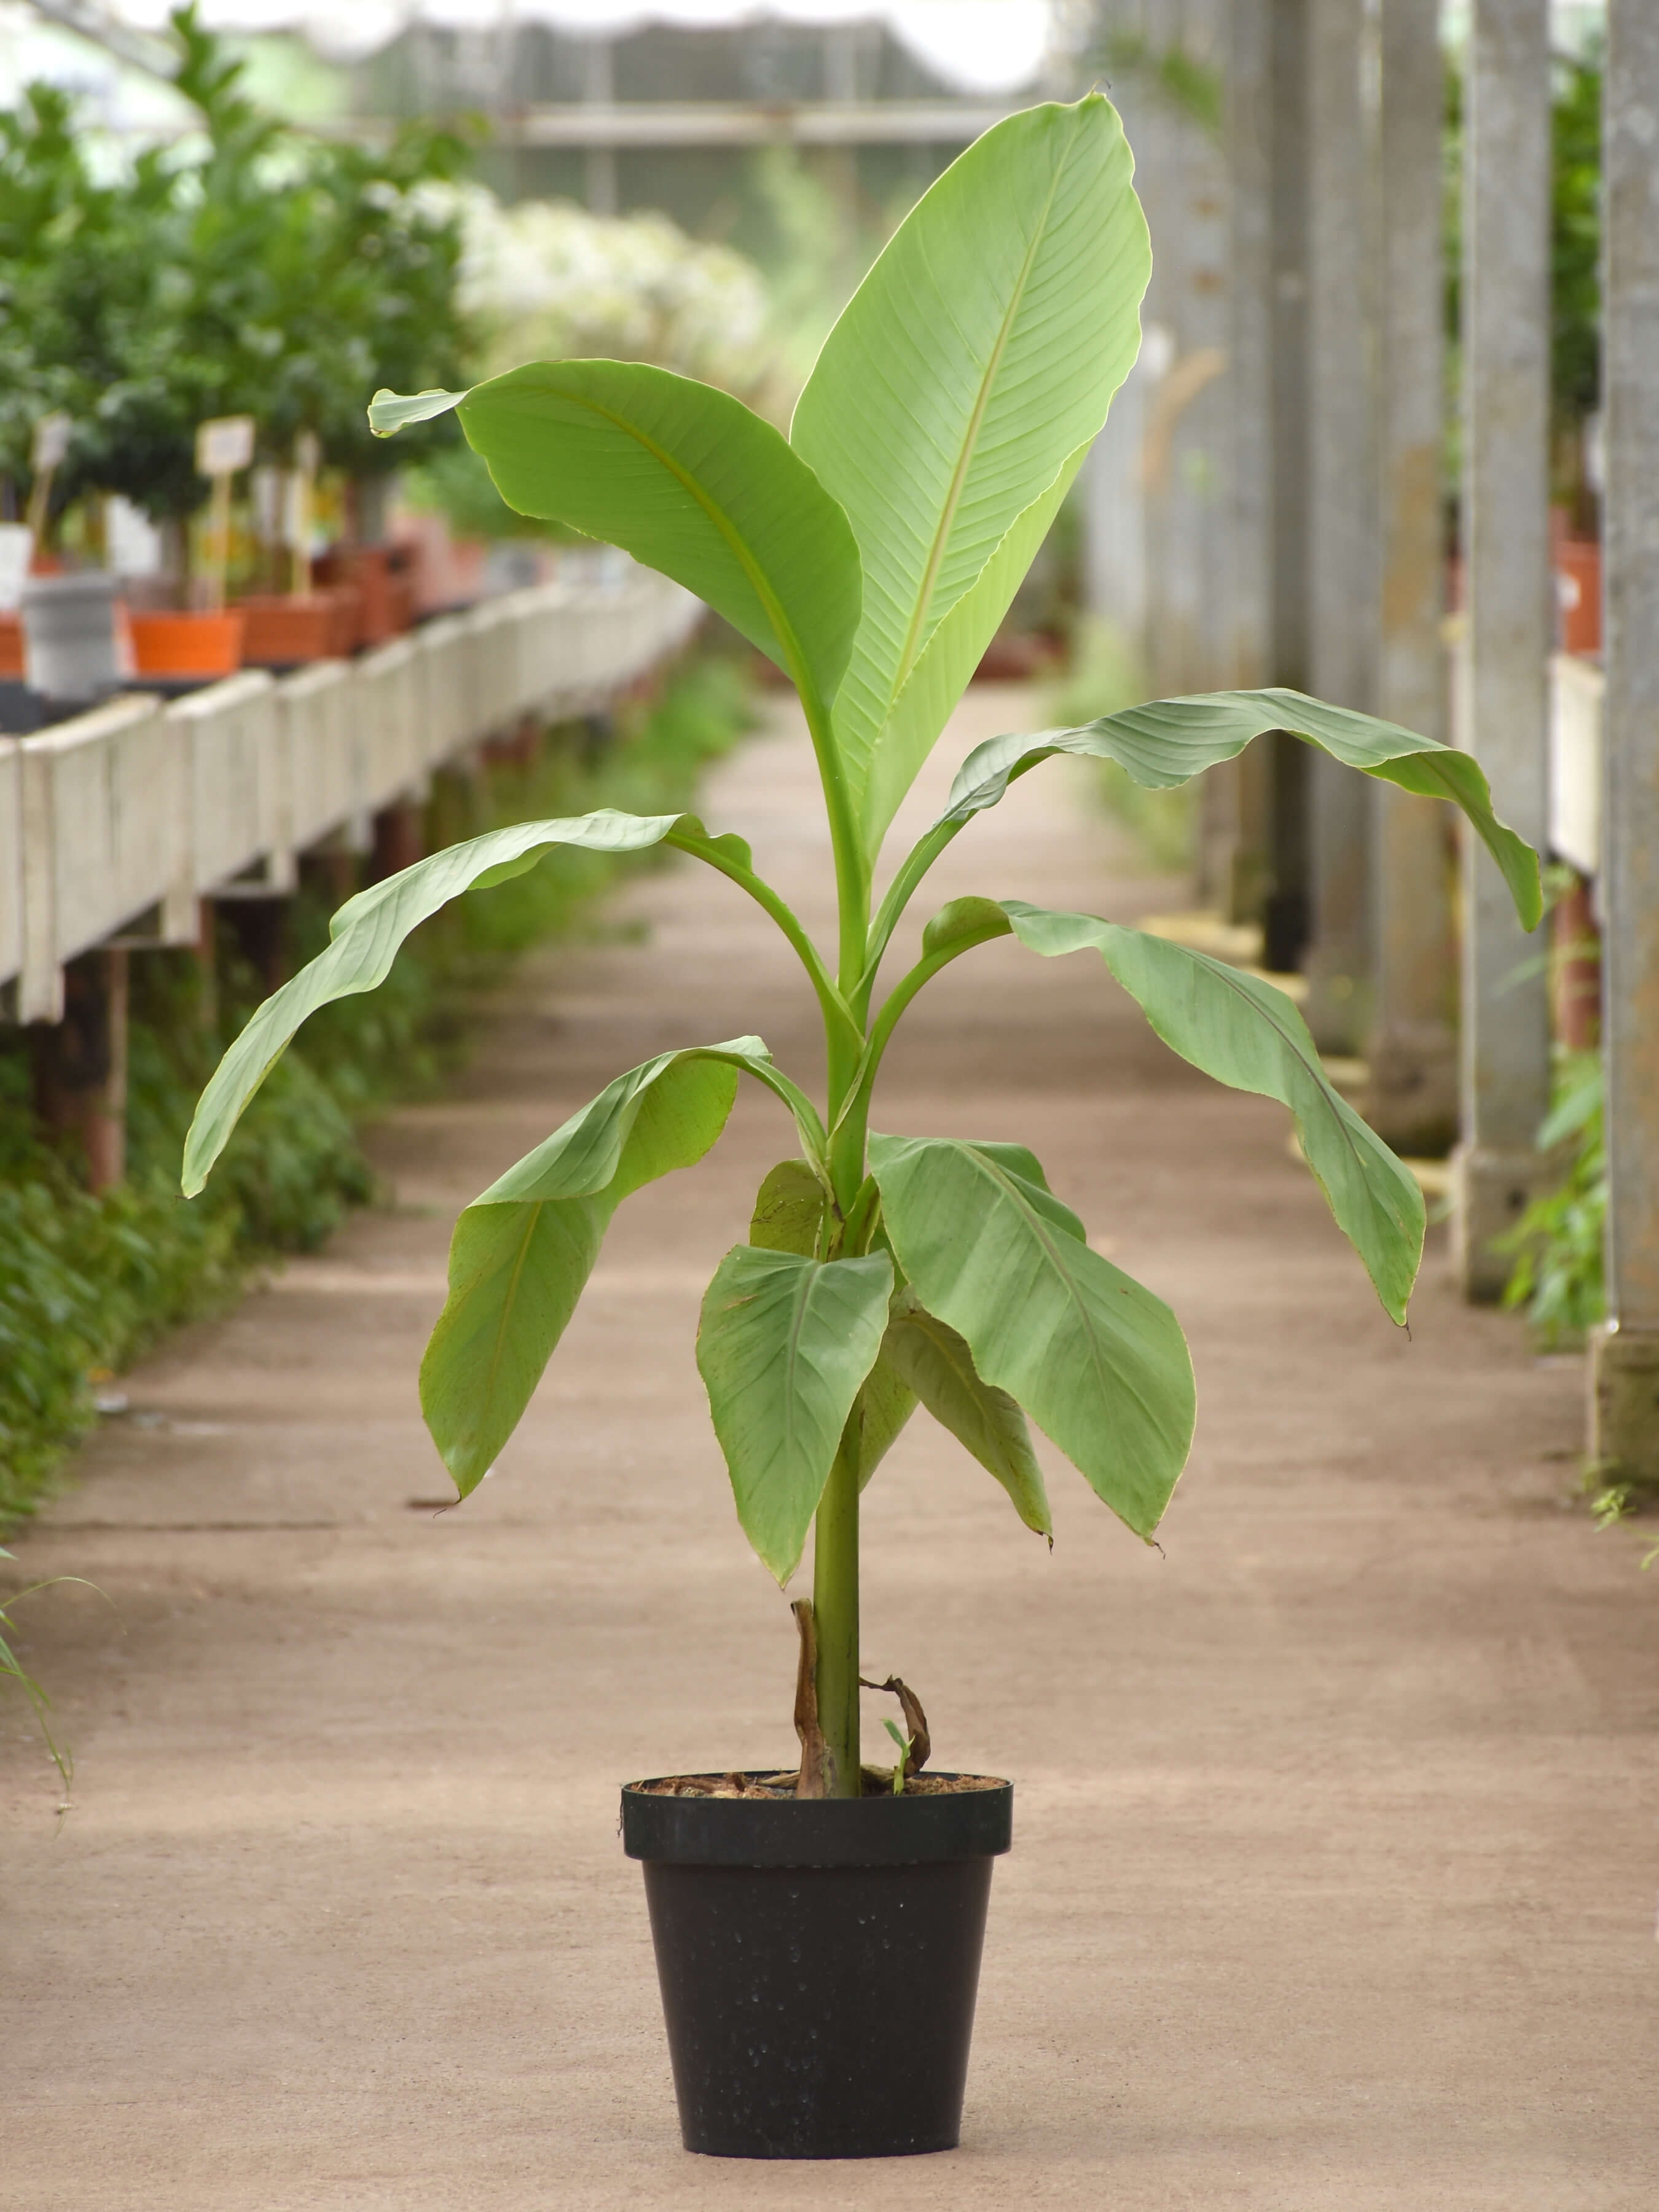 Musa Nagensium essbare Banane Palme Gehölz für den Garten mediterran winterhart 